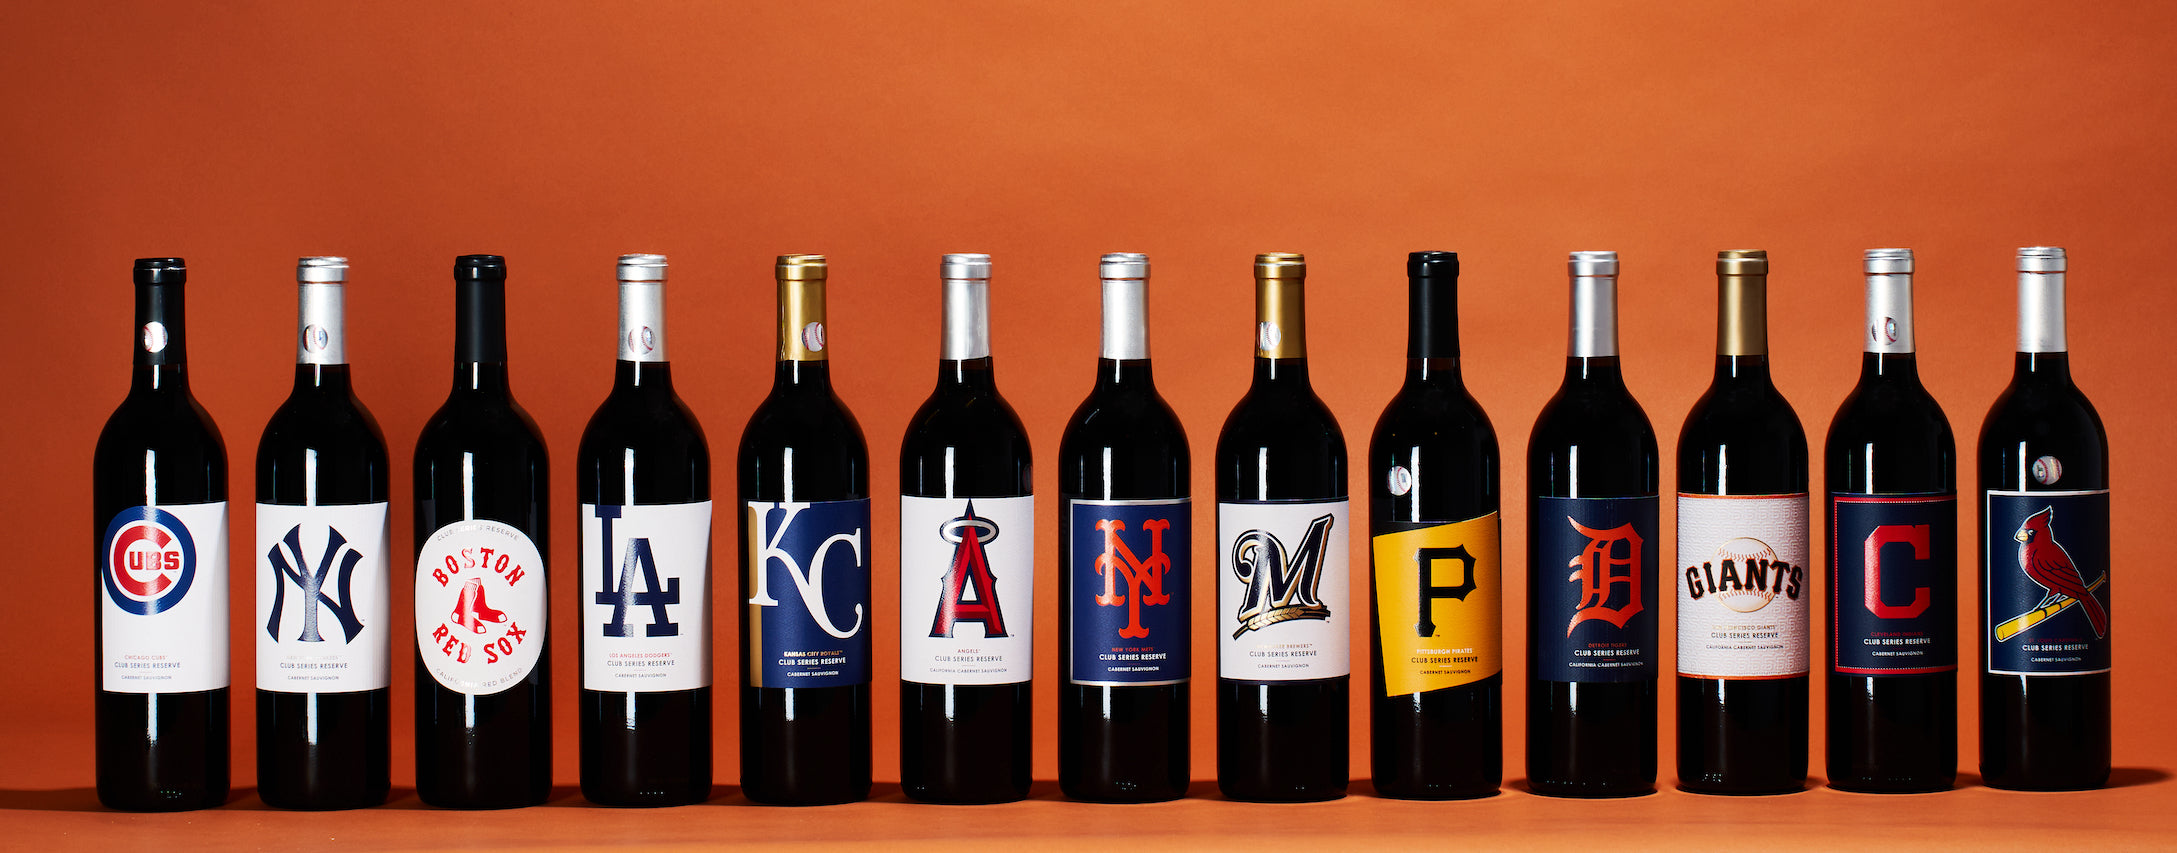 major league baseball wine bottles